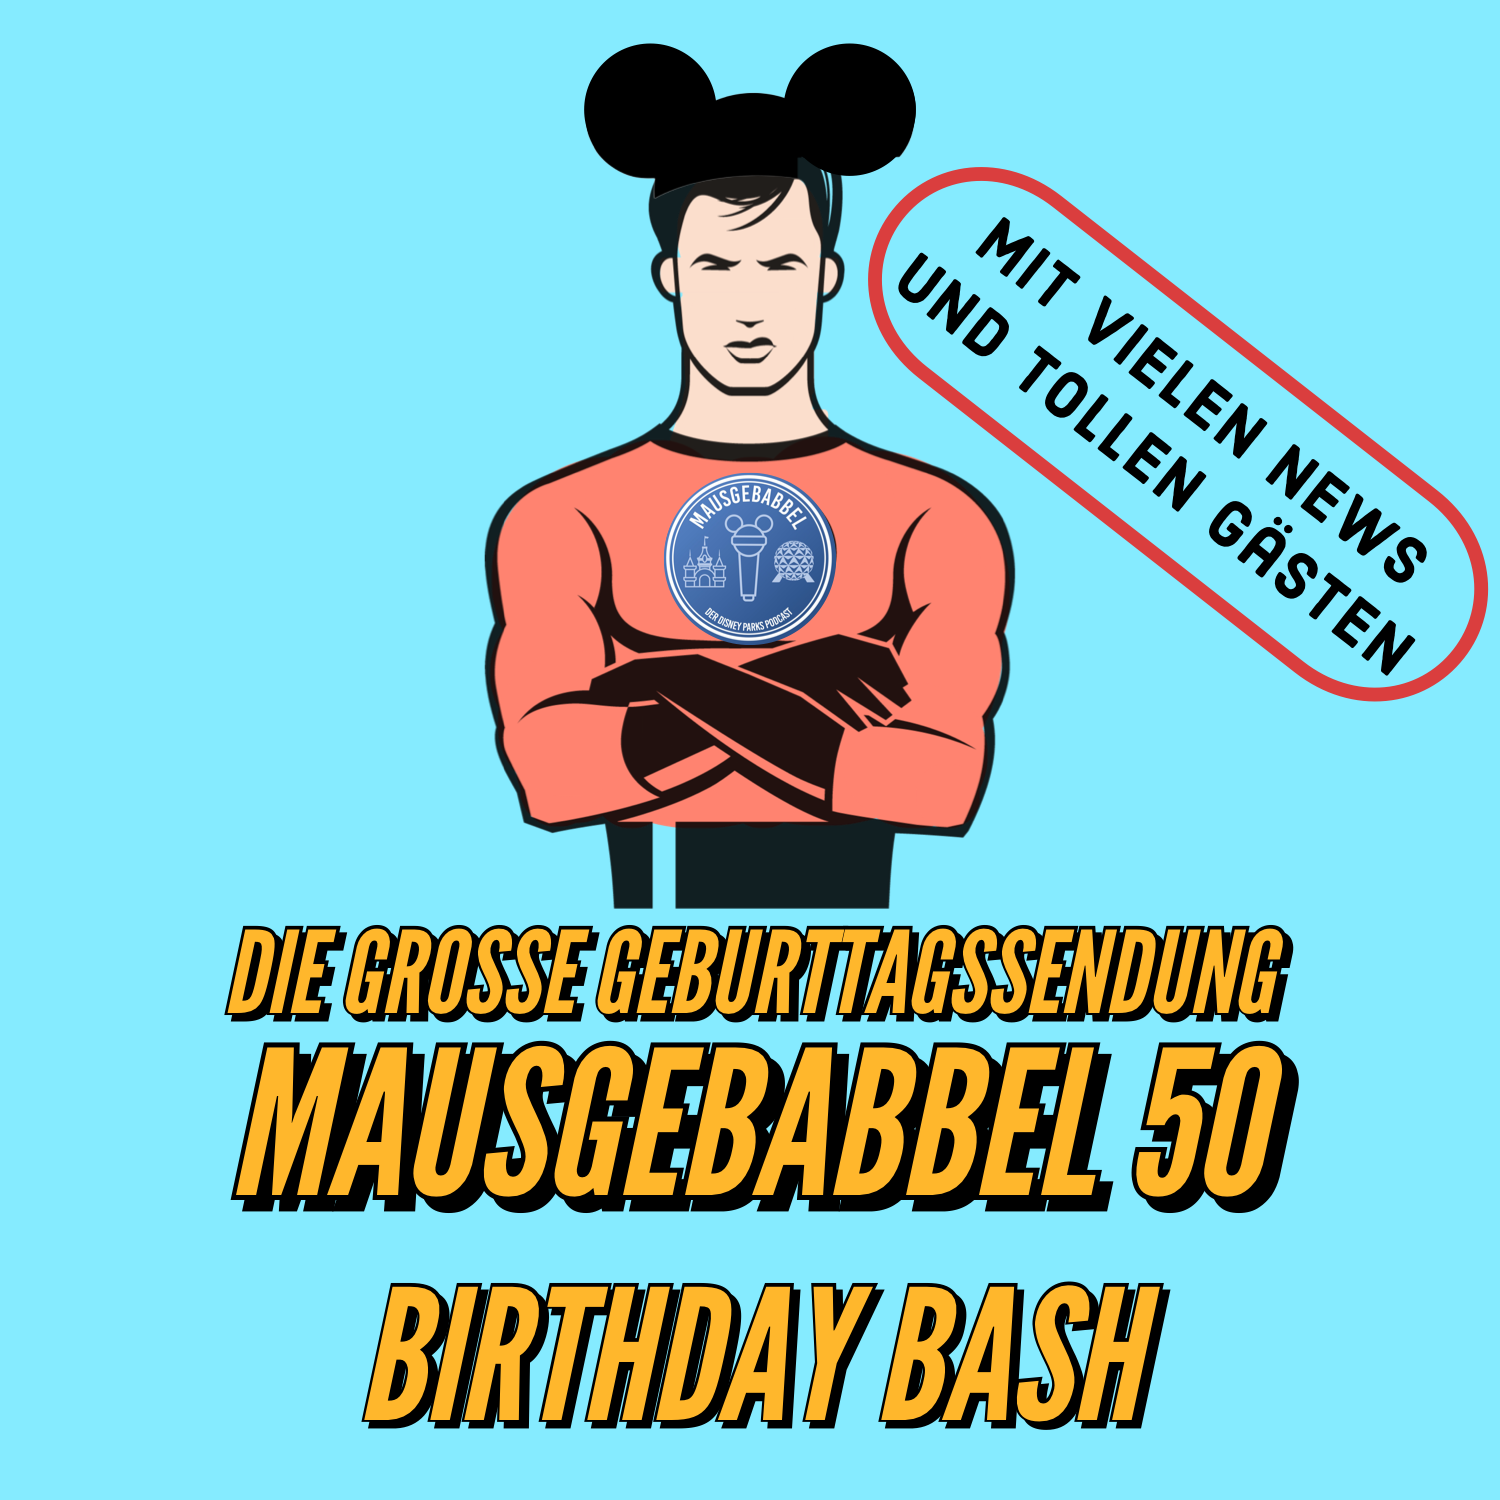 Mausgebabbel 50 - die große Geburtstagssendung mit vielen Disney Parks News und tollen Gästen 1